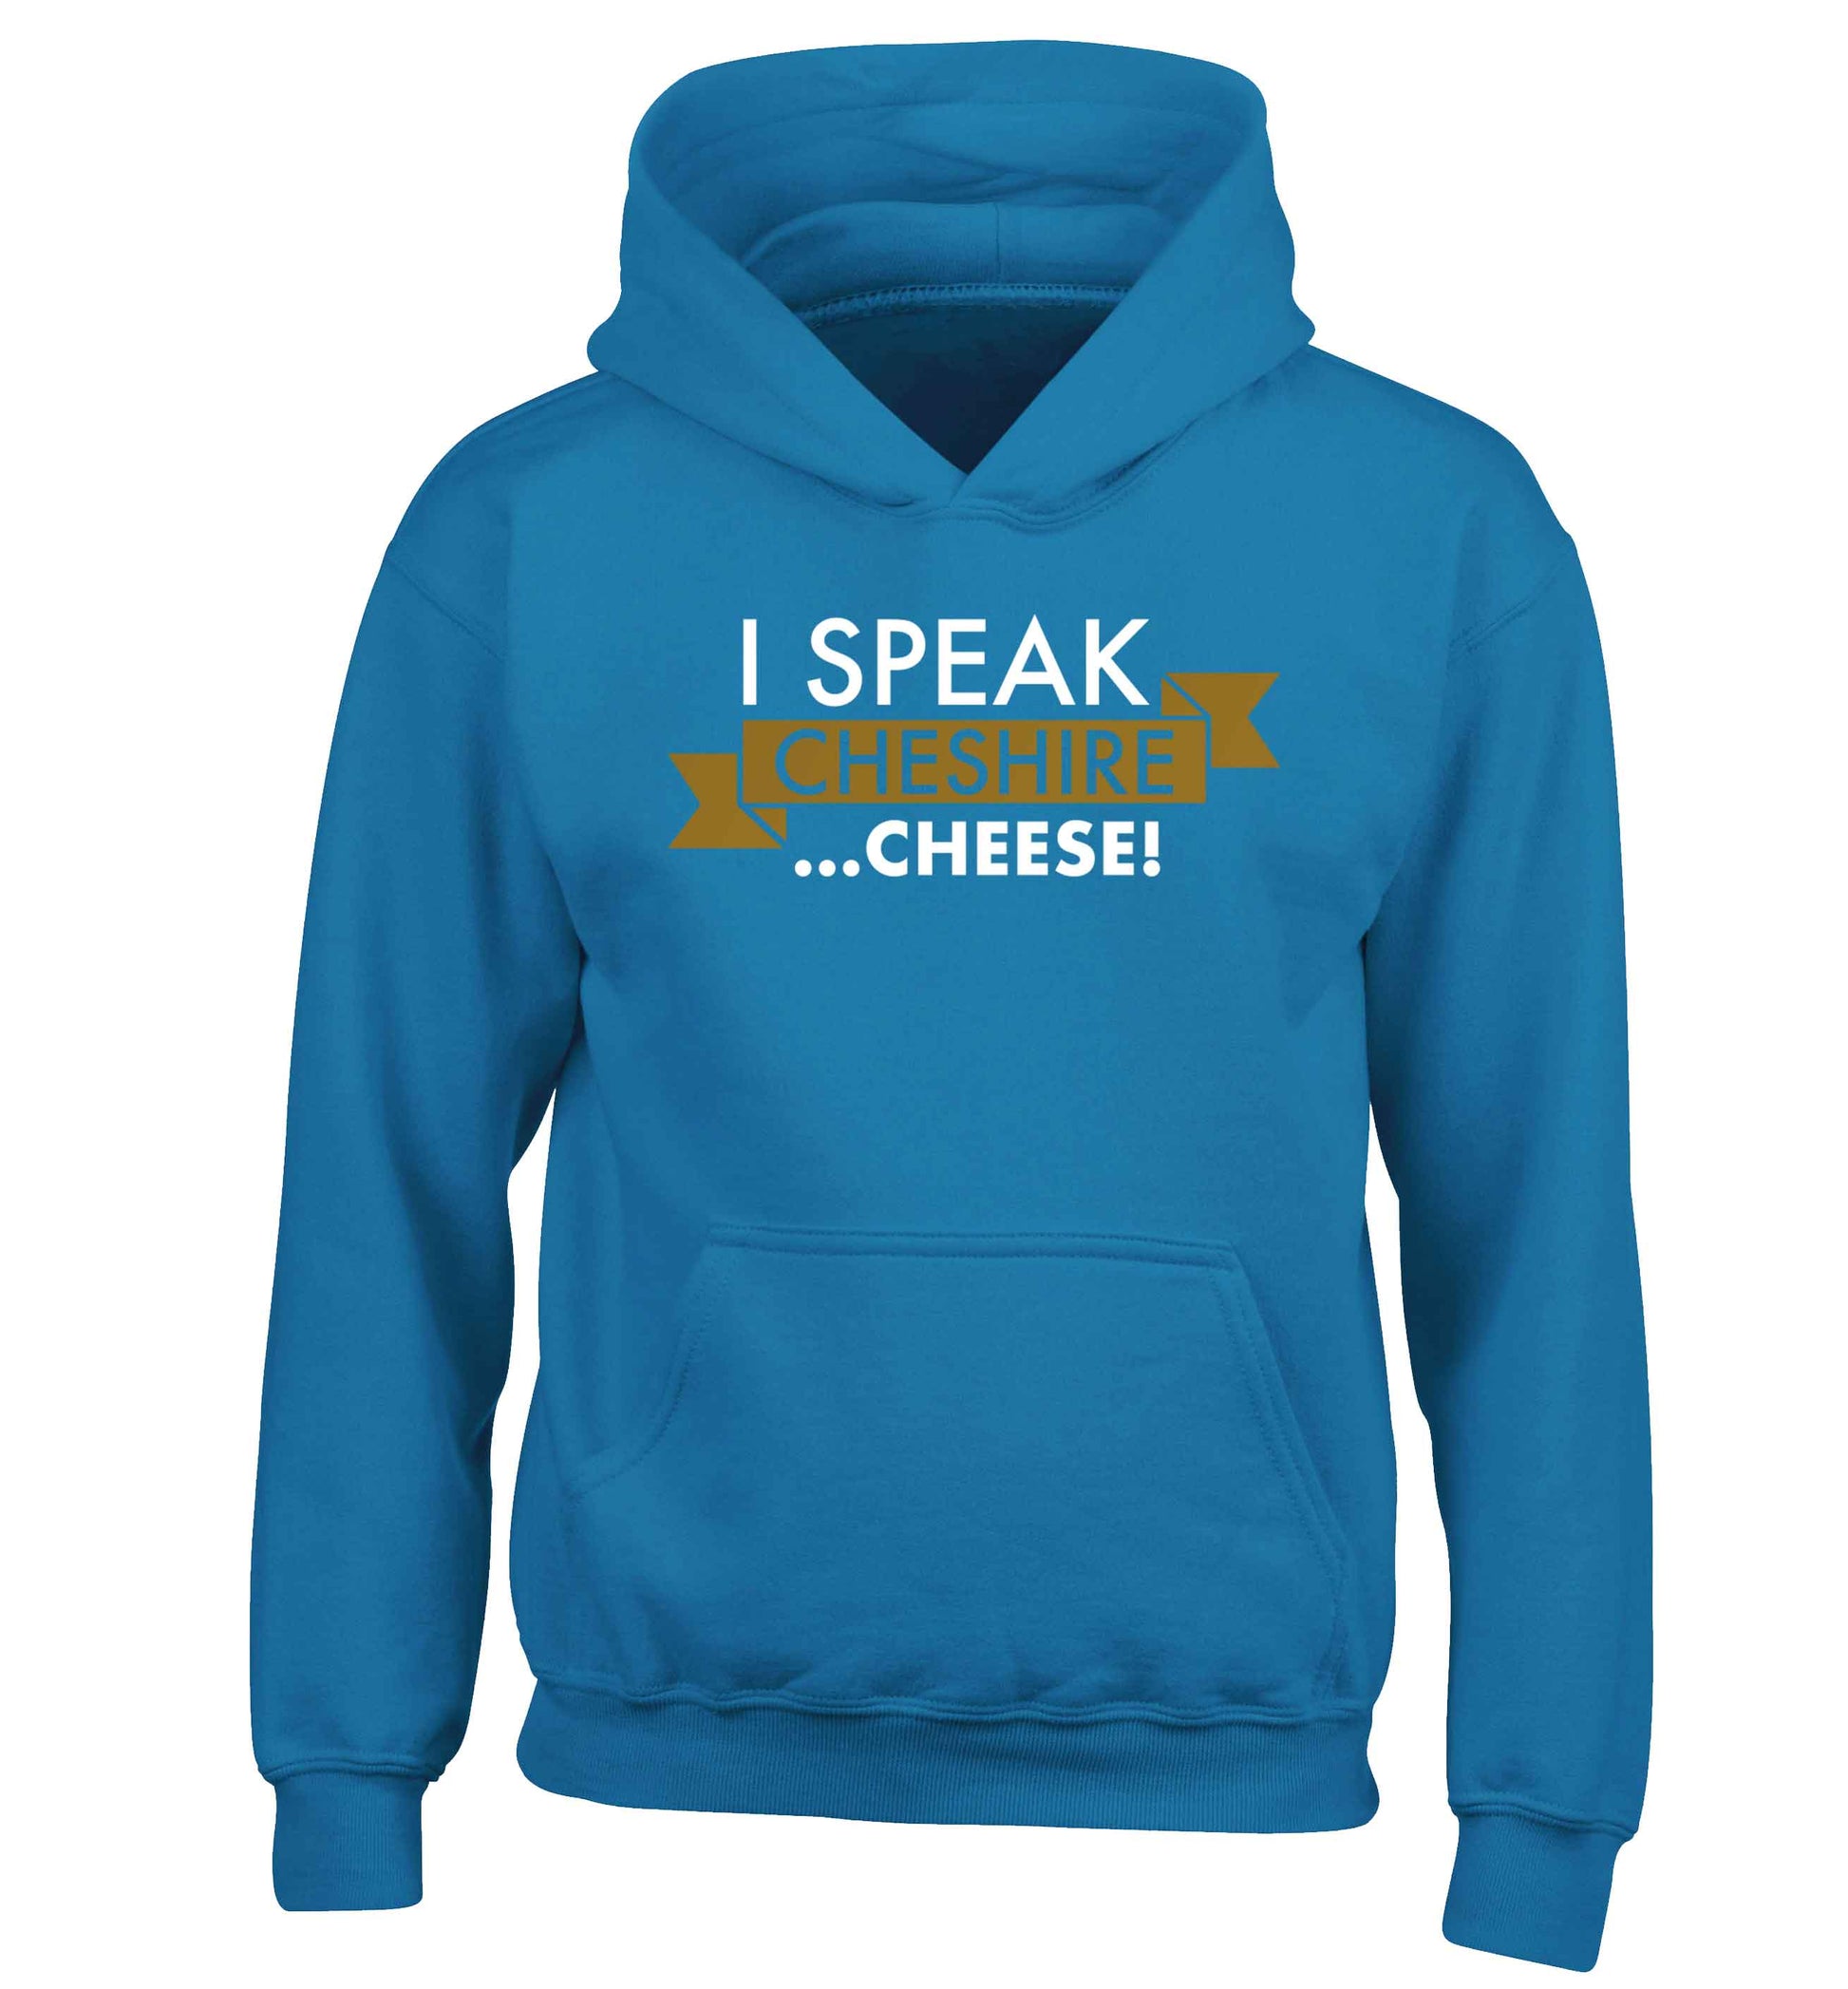 I speak Cheshire cheese children's blue hoodie 12-13 Years